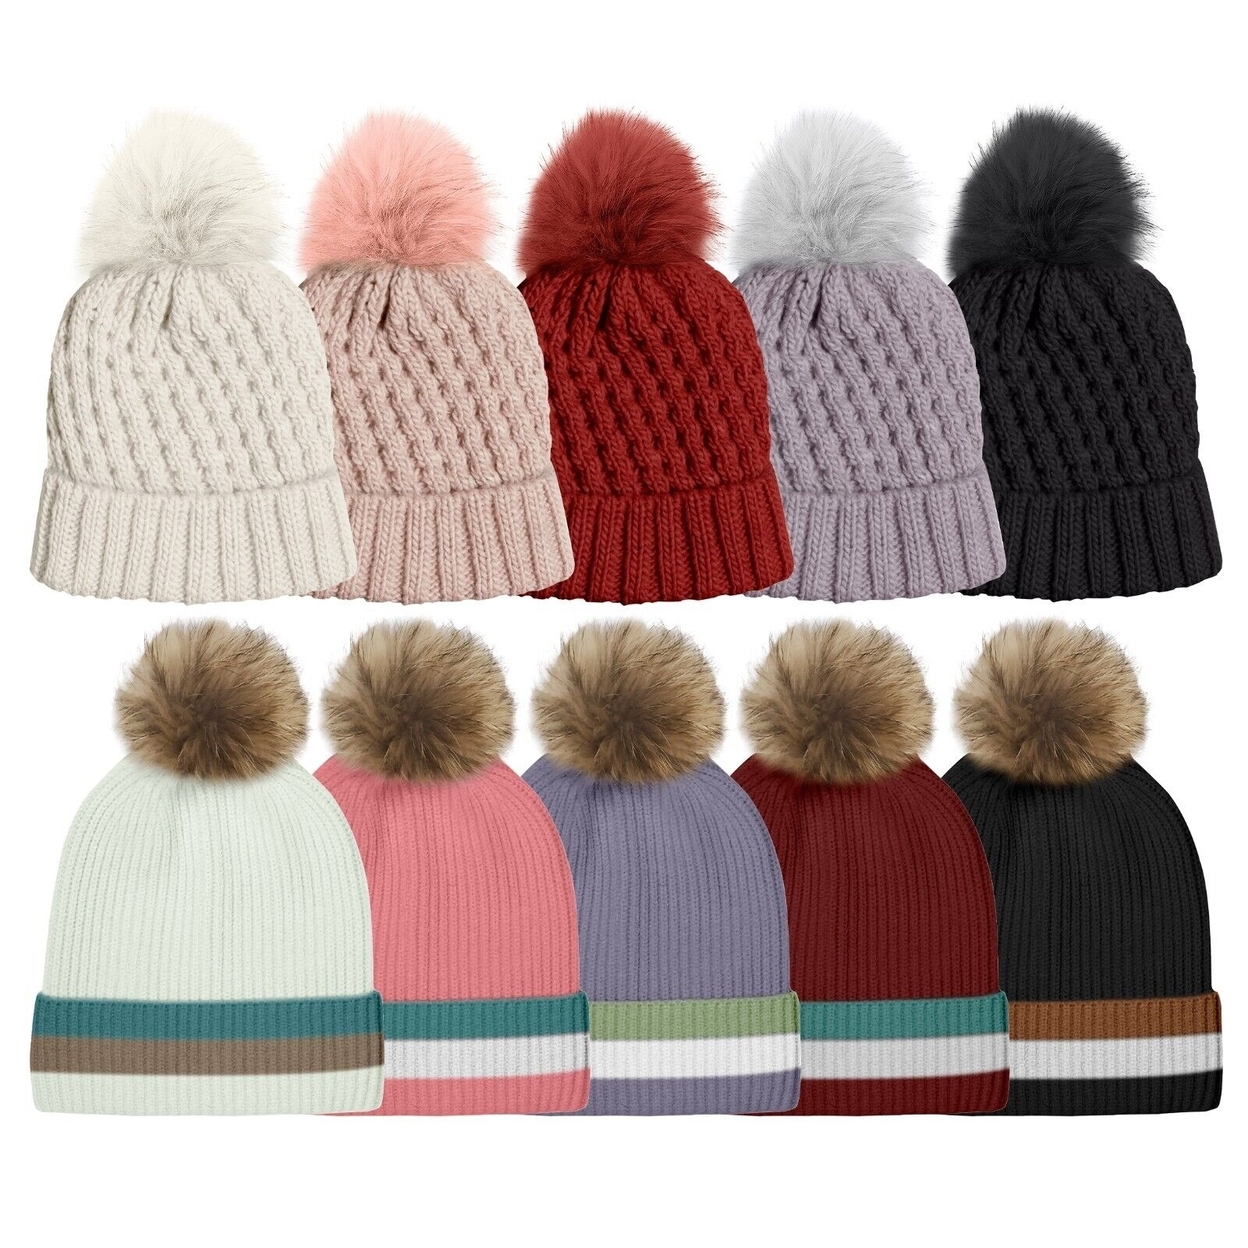 Multi-Pack: Women's Ultra-Soft Winter Warm Knit Feel Pom Pom Hat W/ Faux Fur Lining - Striped, 2-pack